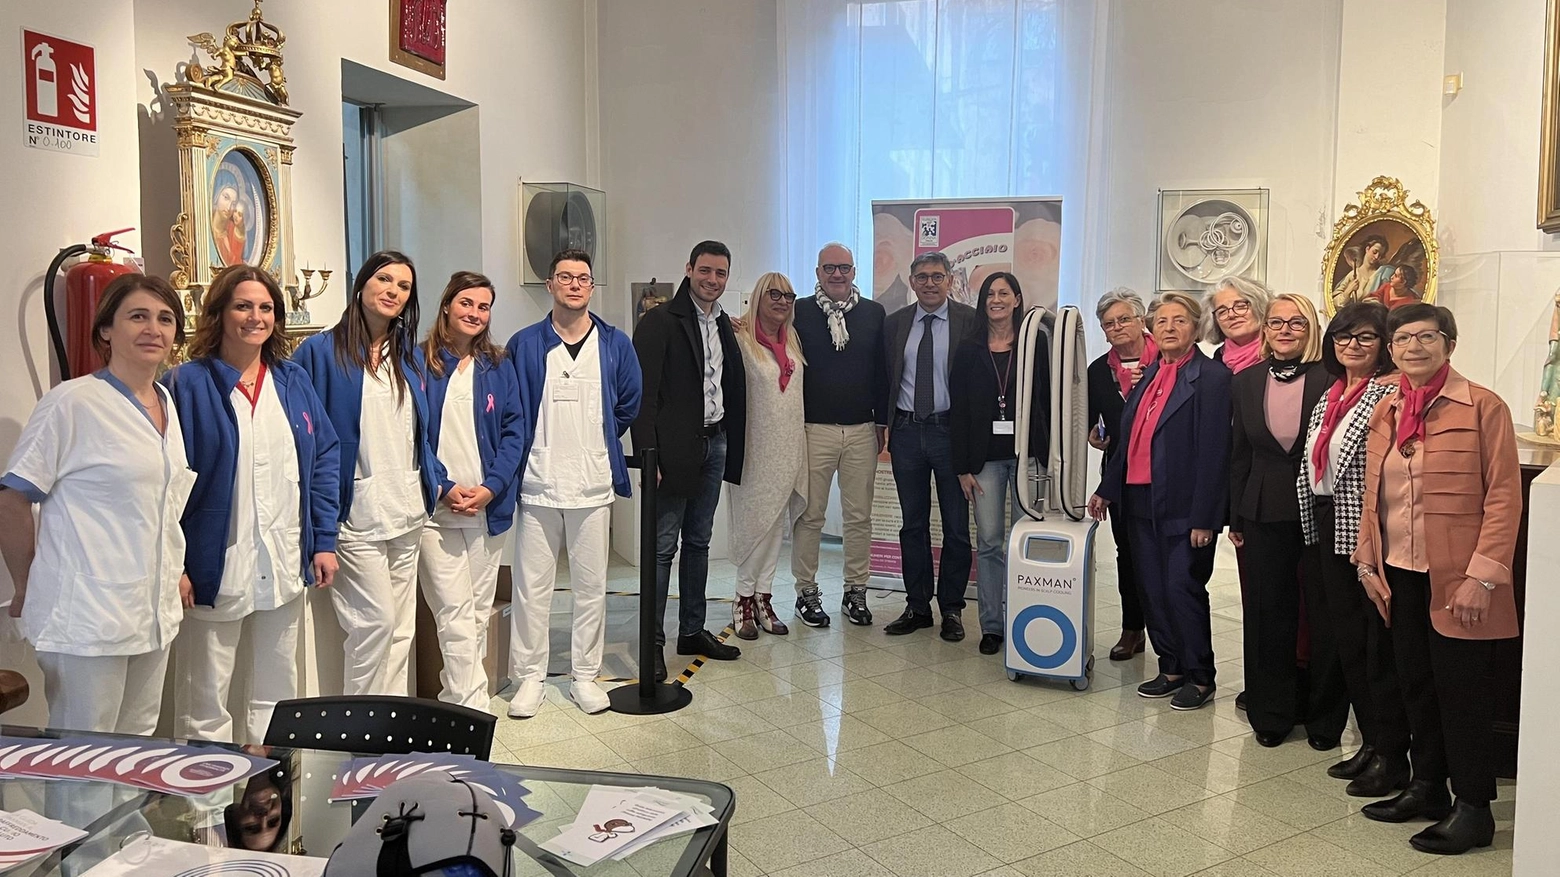 Nuovo apparecchio ‘Paxman’ donato all’Oncologia di Faenza